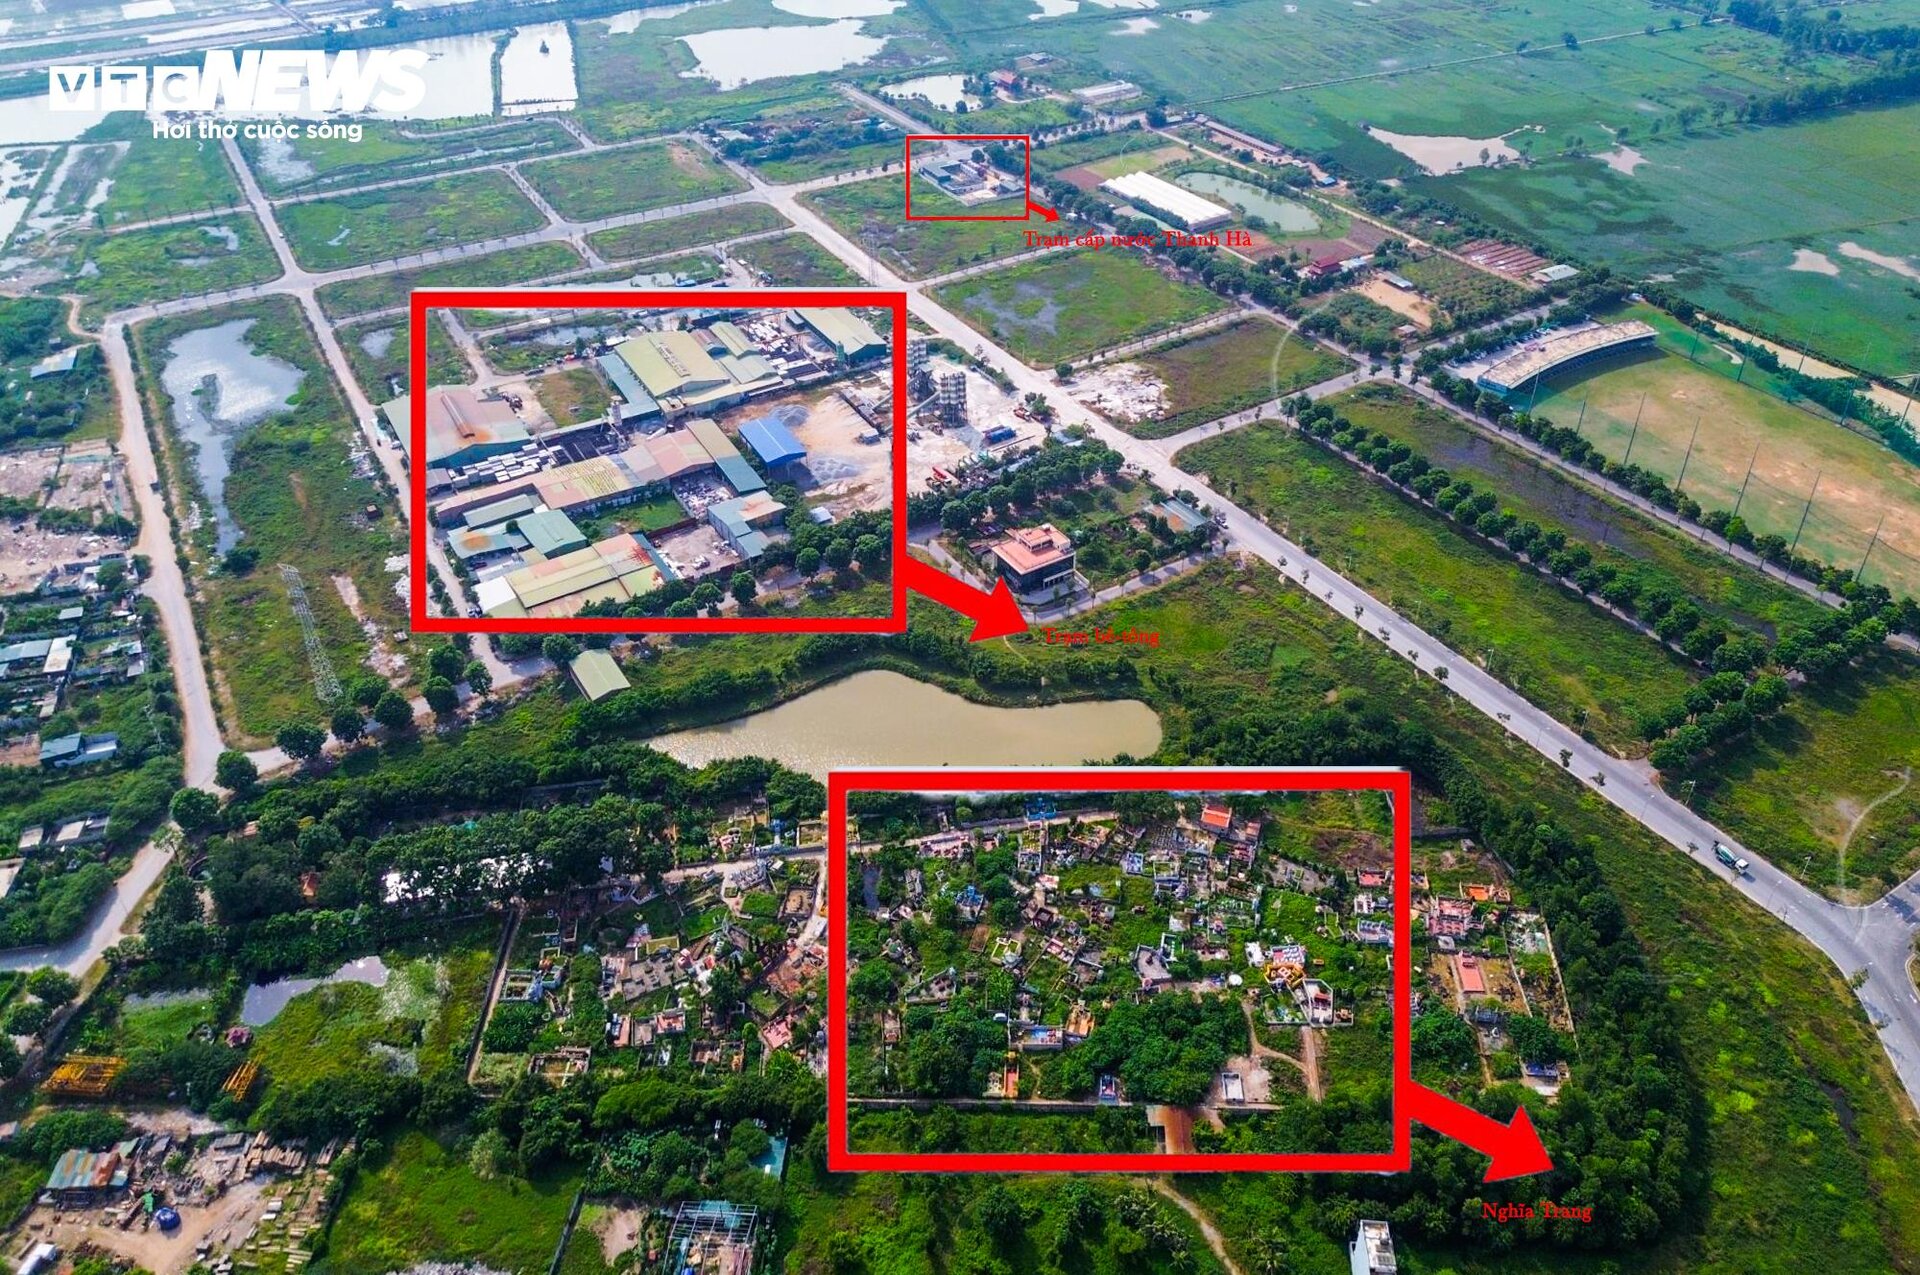 Trạm cấp nước bị cư dân Thanh Hà phản đối, chỉ cách nghĩa trang khoảng 500m - 9